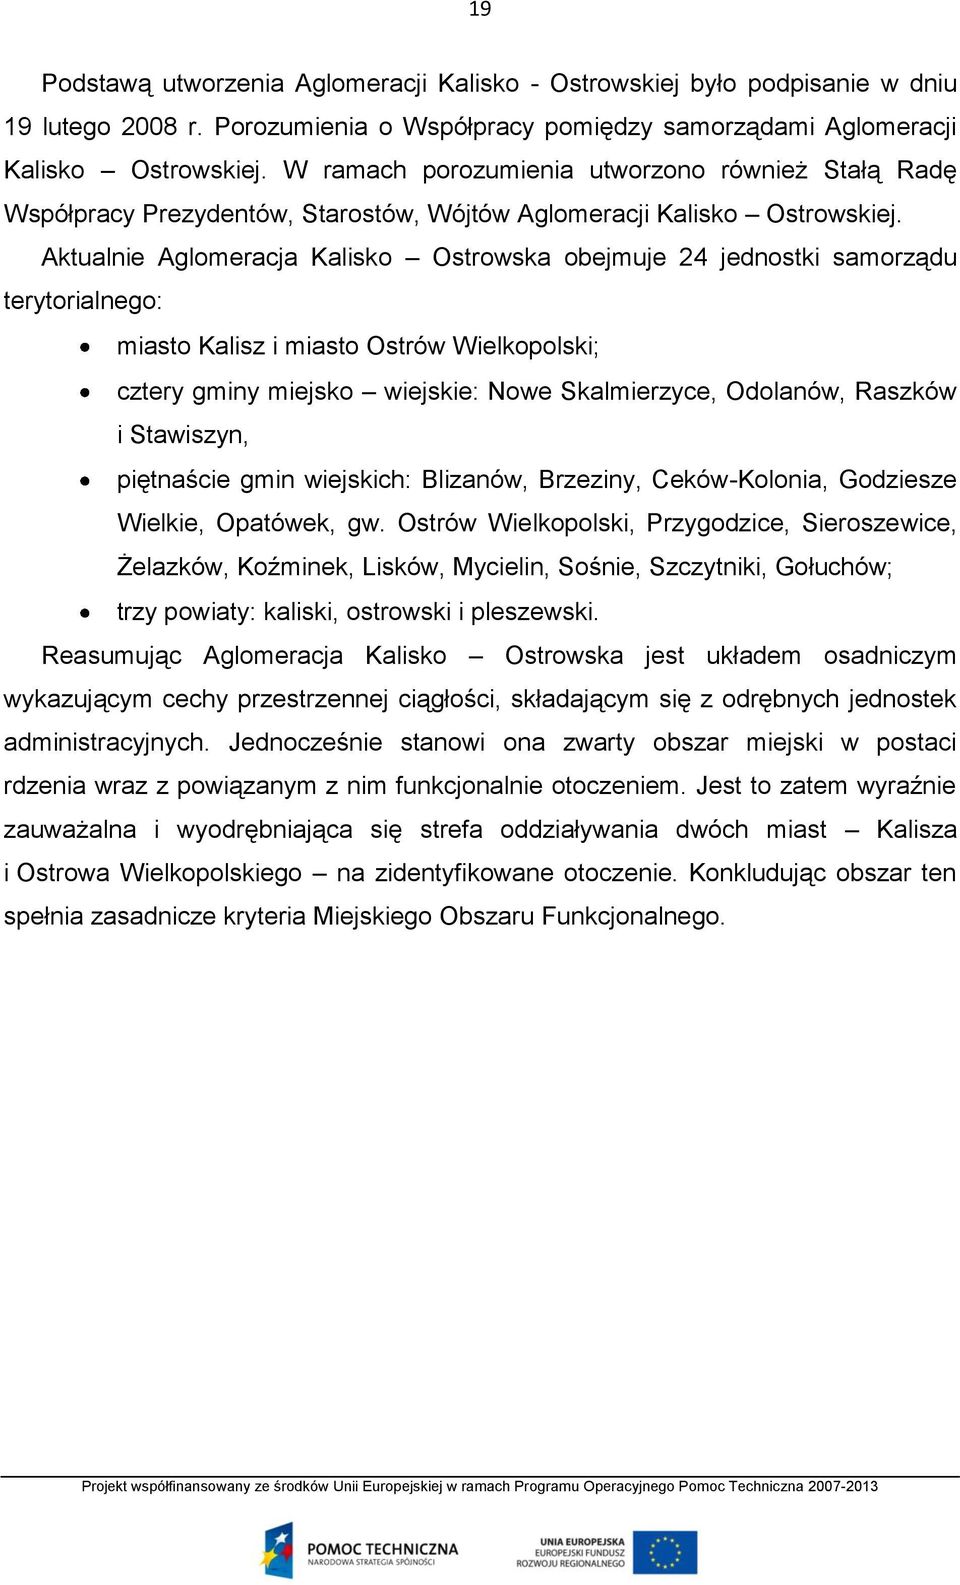 Aktualnie Aglomeracja Kalisko Ostrowska obejmuje 24 jednostki samorządu terytorialnego: miasto Kalisz i miasto Ostrów Wielkopolski; cztery gminy miejsko wiejskie: Nowe Skalmierzyce, Odolanów, Raszków